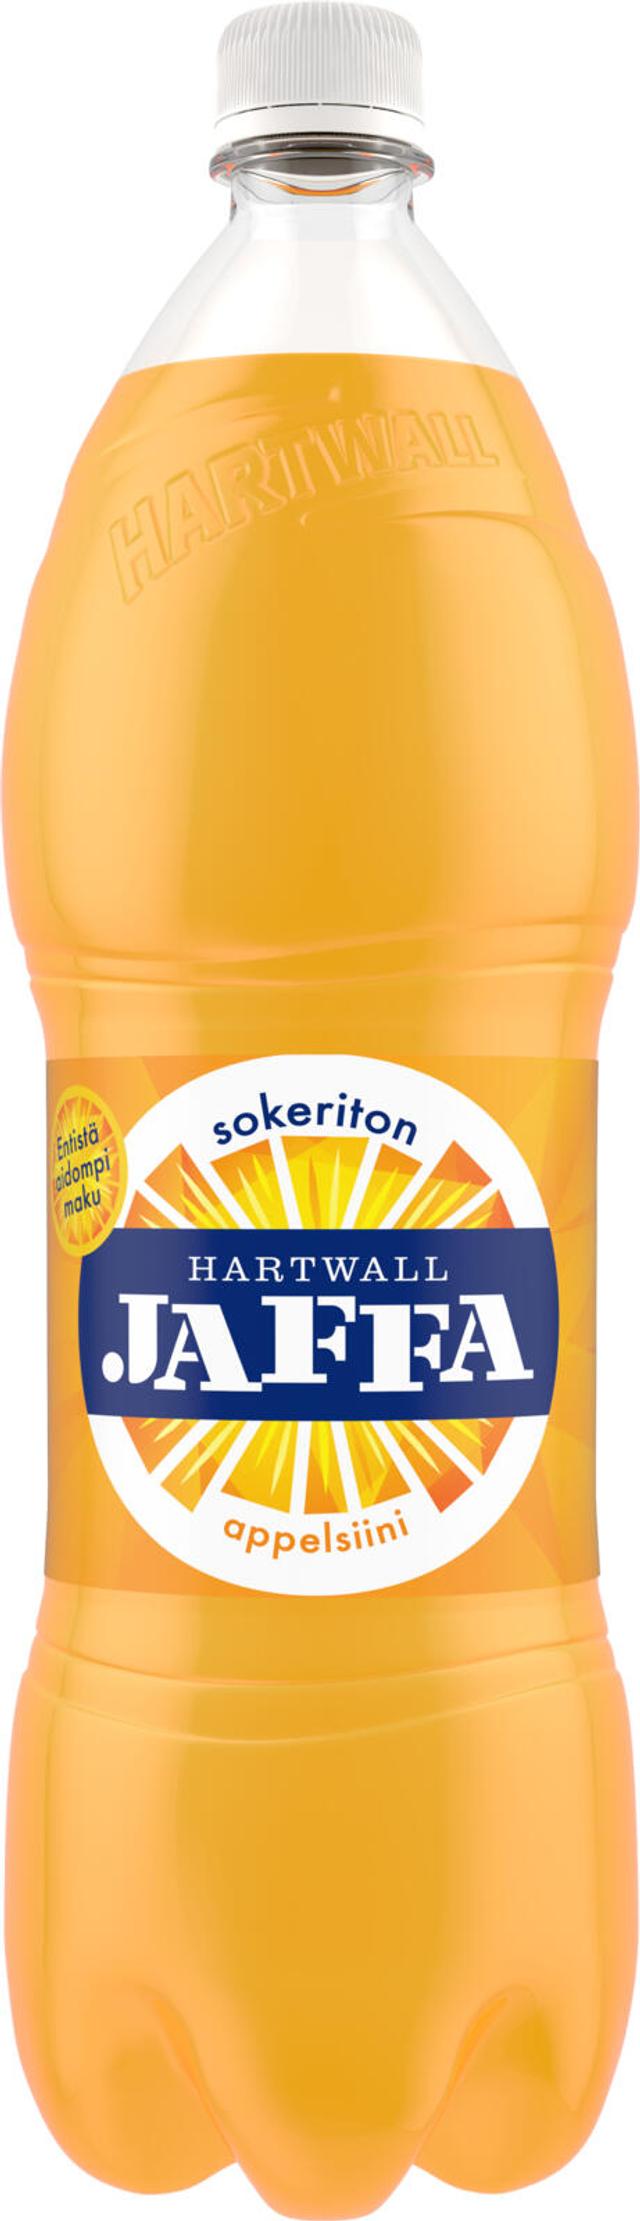 Hartwall Jaffa Appelsiini Sokeriton virvoitusjuoma 1,5 l